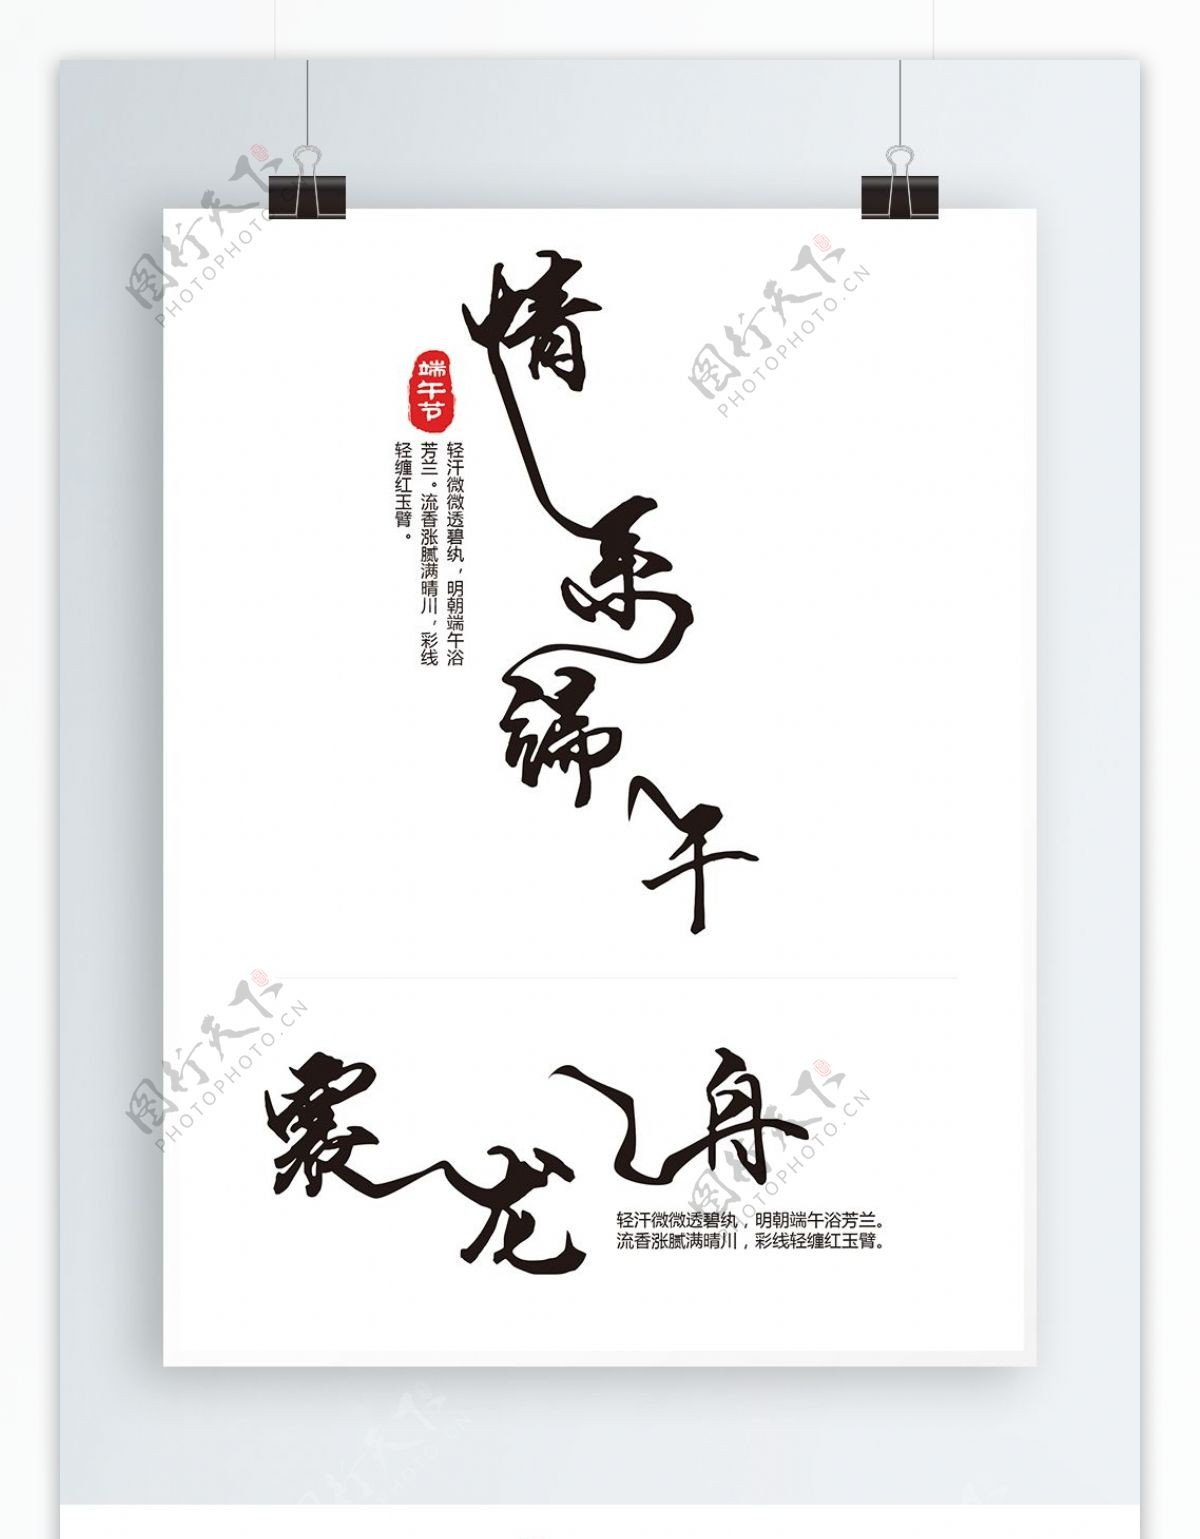 原创情系端午赛龙舟中国风字体设计